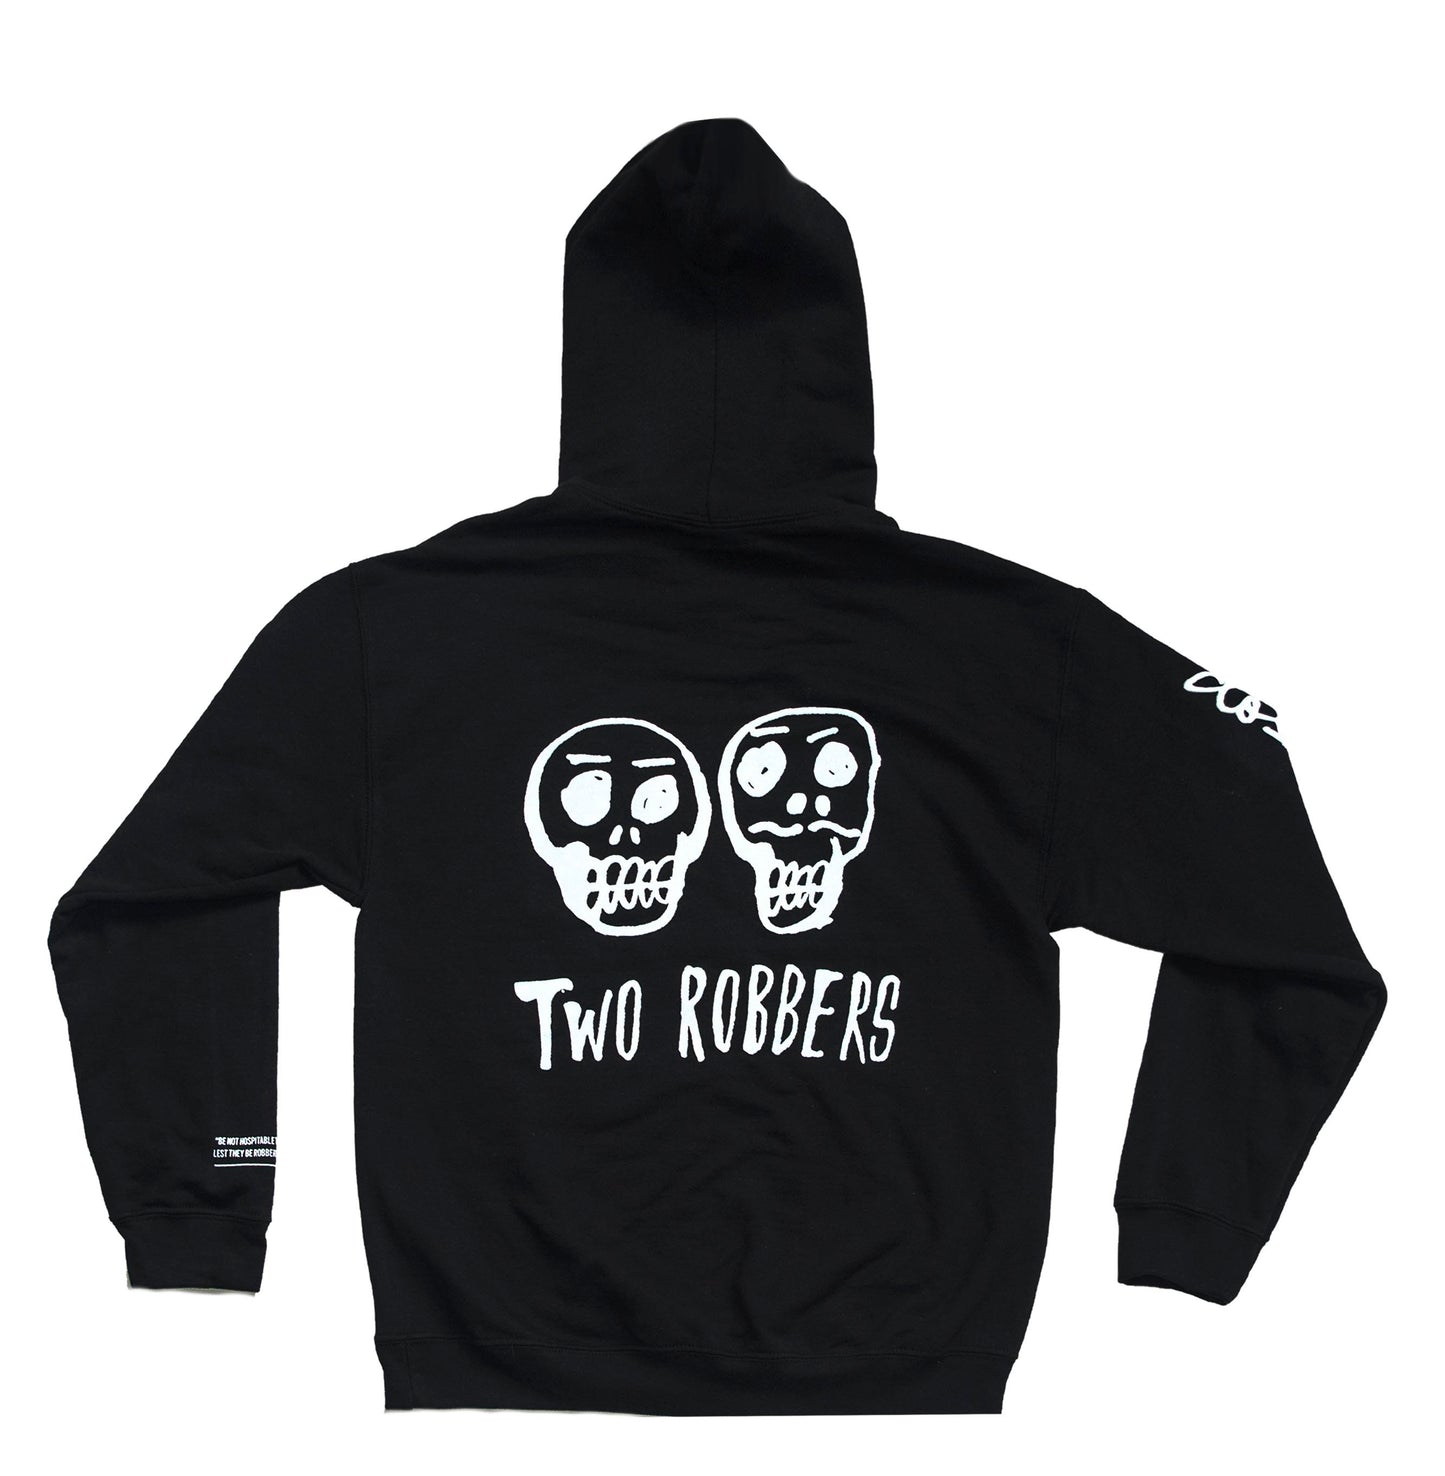 Two Robbers Hoodie & Sweats Bundle (Team Uniform)